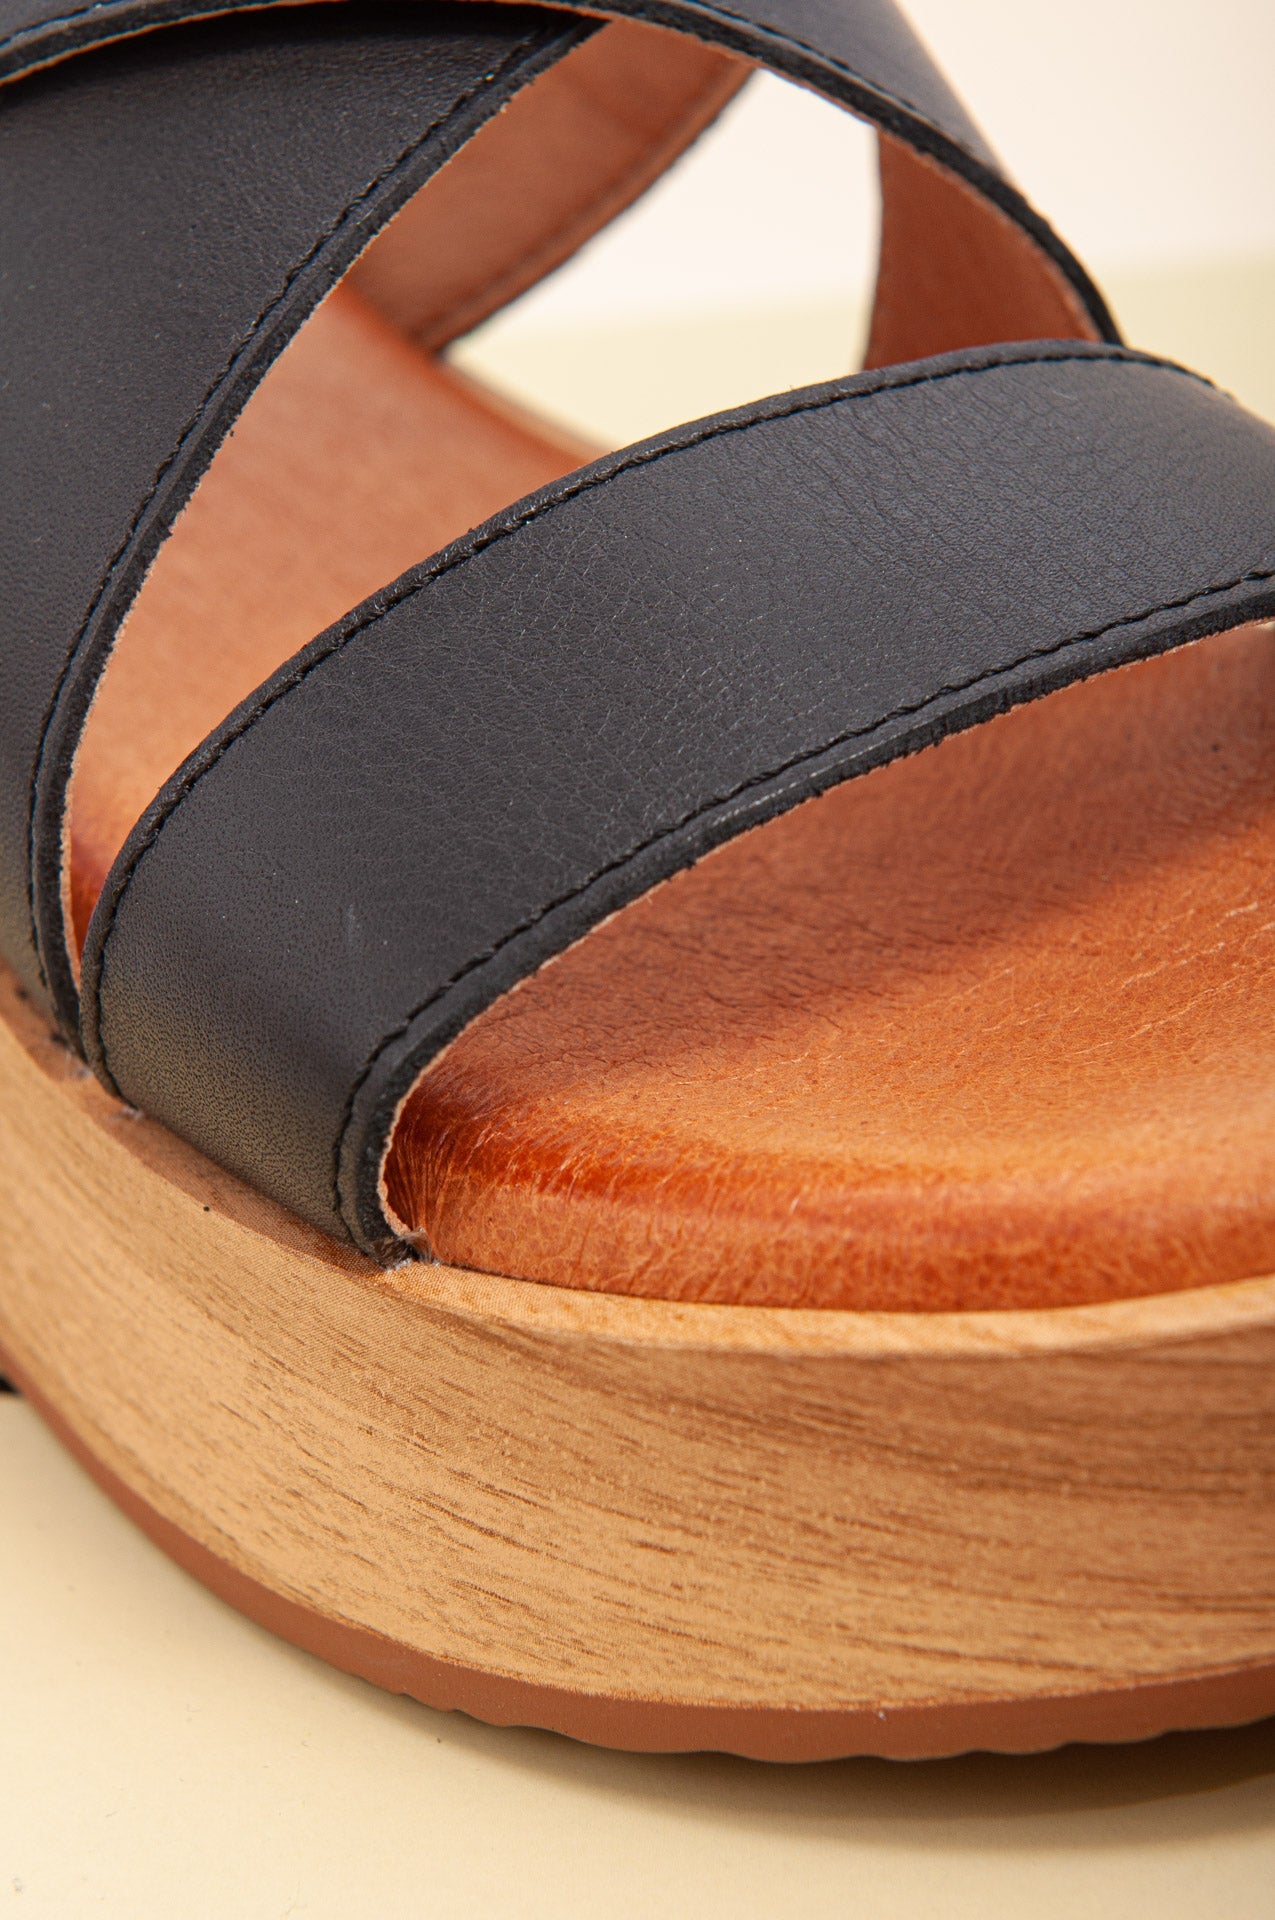 Sandalias negras de plataforma cómodas y ligeras. Sandalias ideales para usar todo el día.